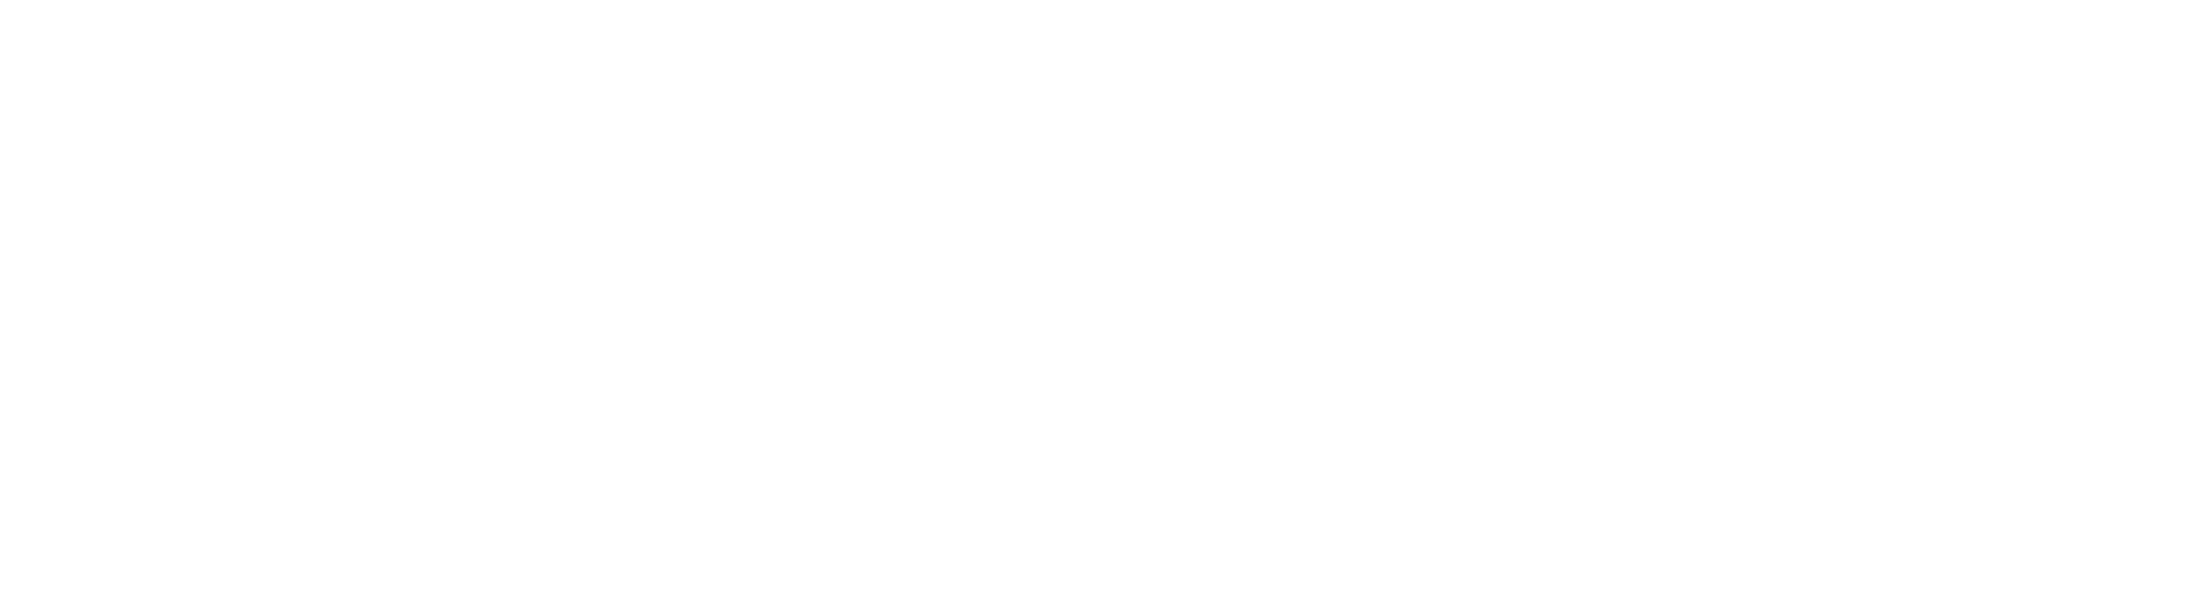 Elder Beerman logo